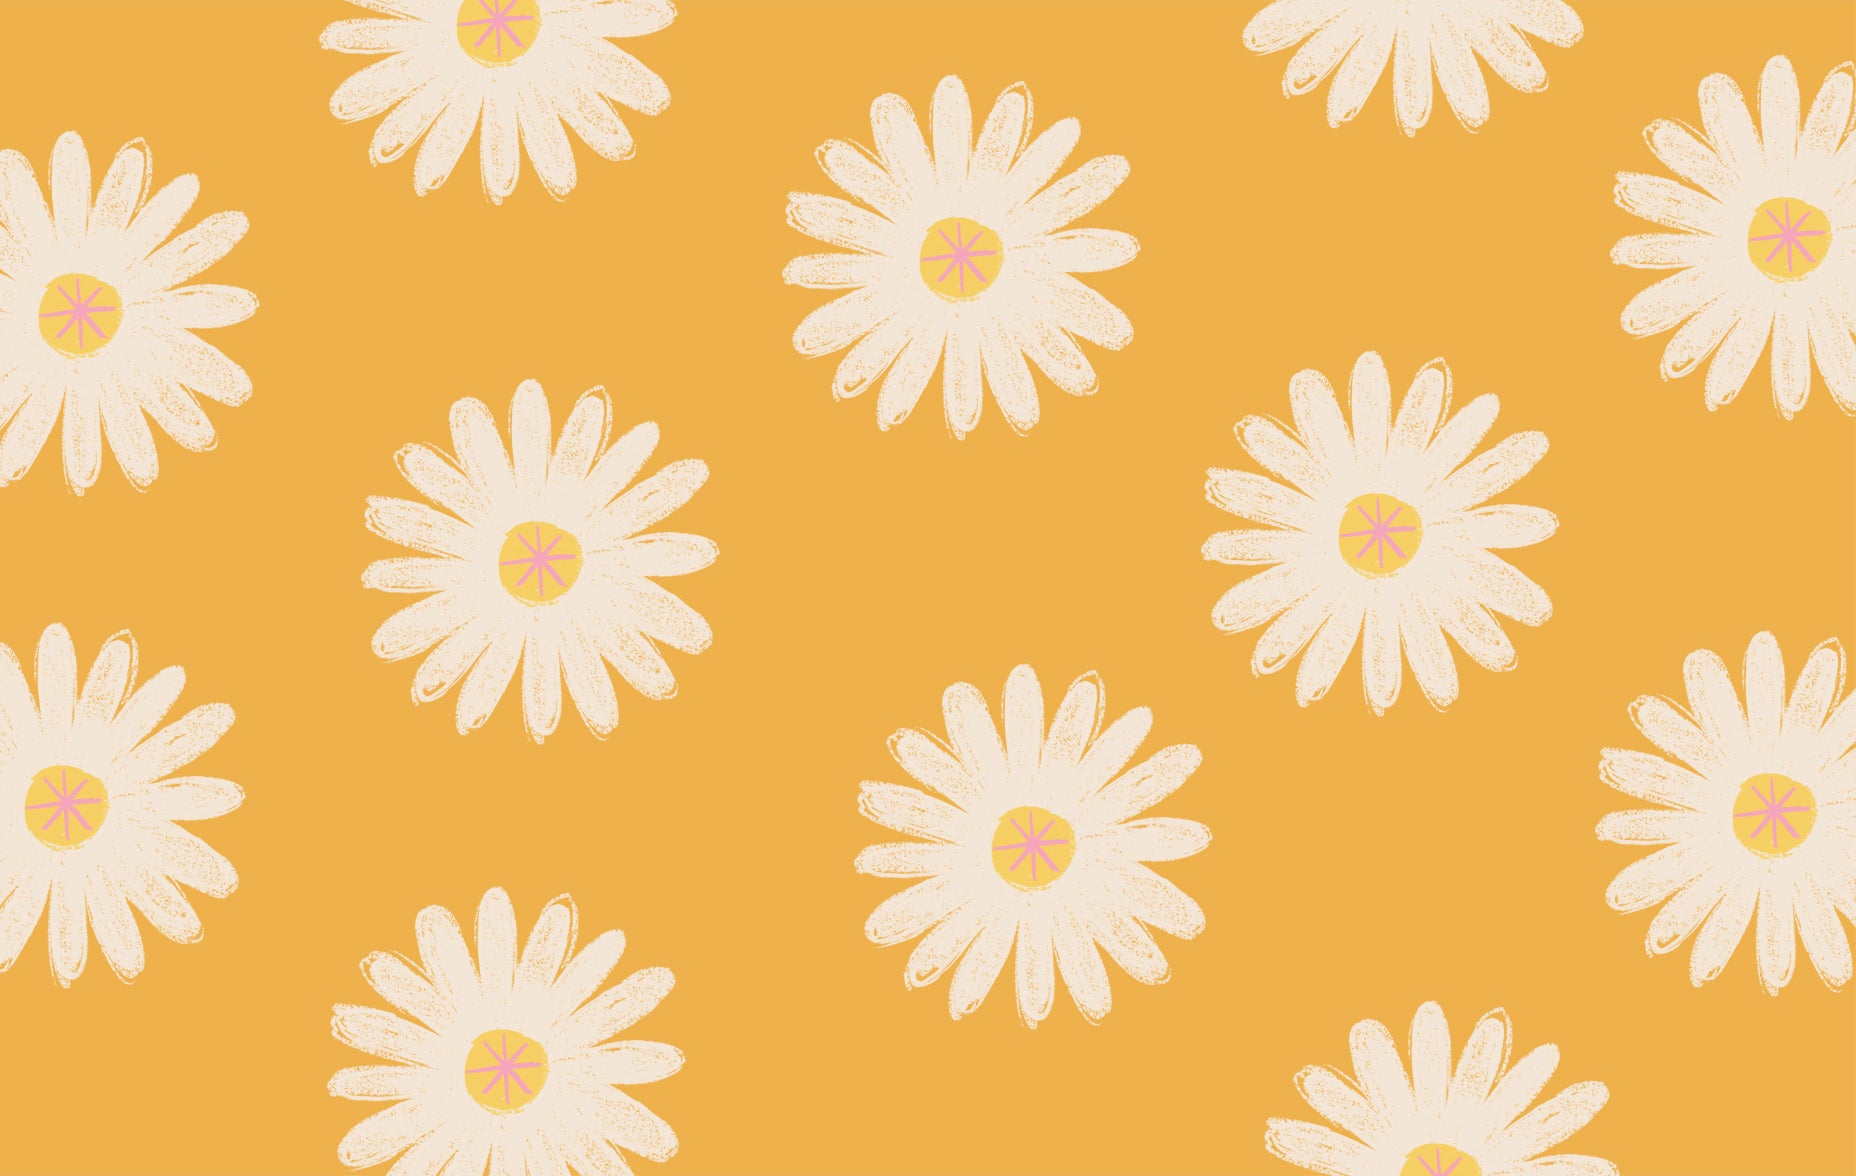 Illustrated multiple daisy flower desktop wallpaper